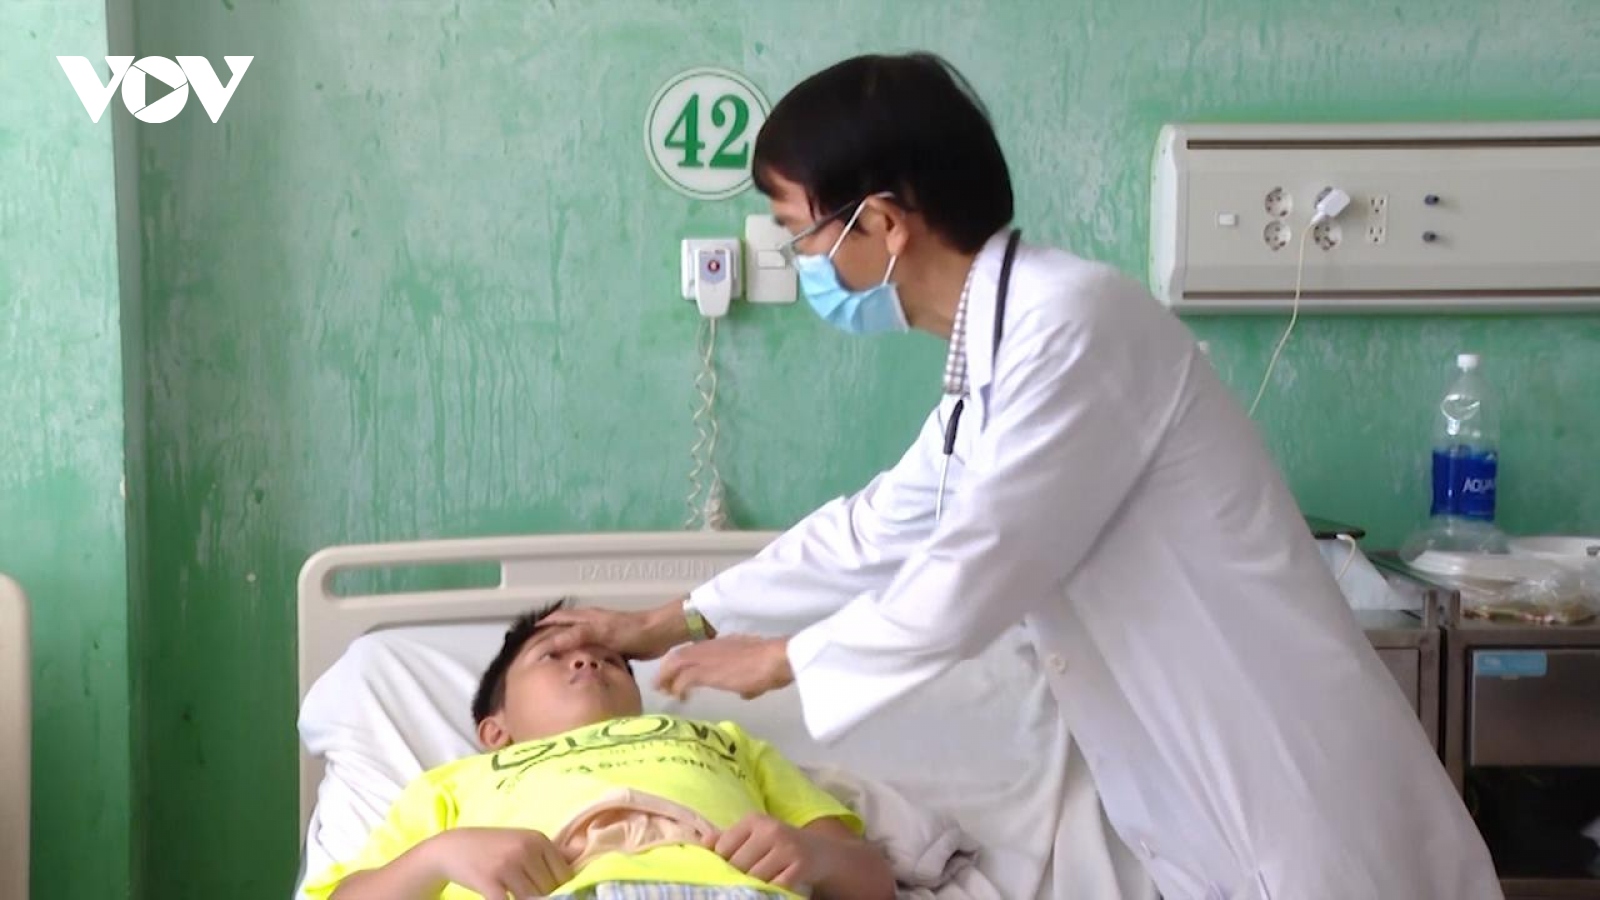 Bà Rịa – Vũng Tàu: Ăn gà rán, 9 người nhập viện trong tình trạng ngộ độc thực phẩm